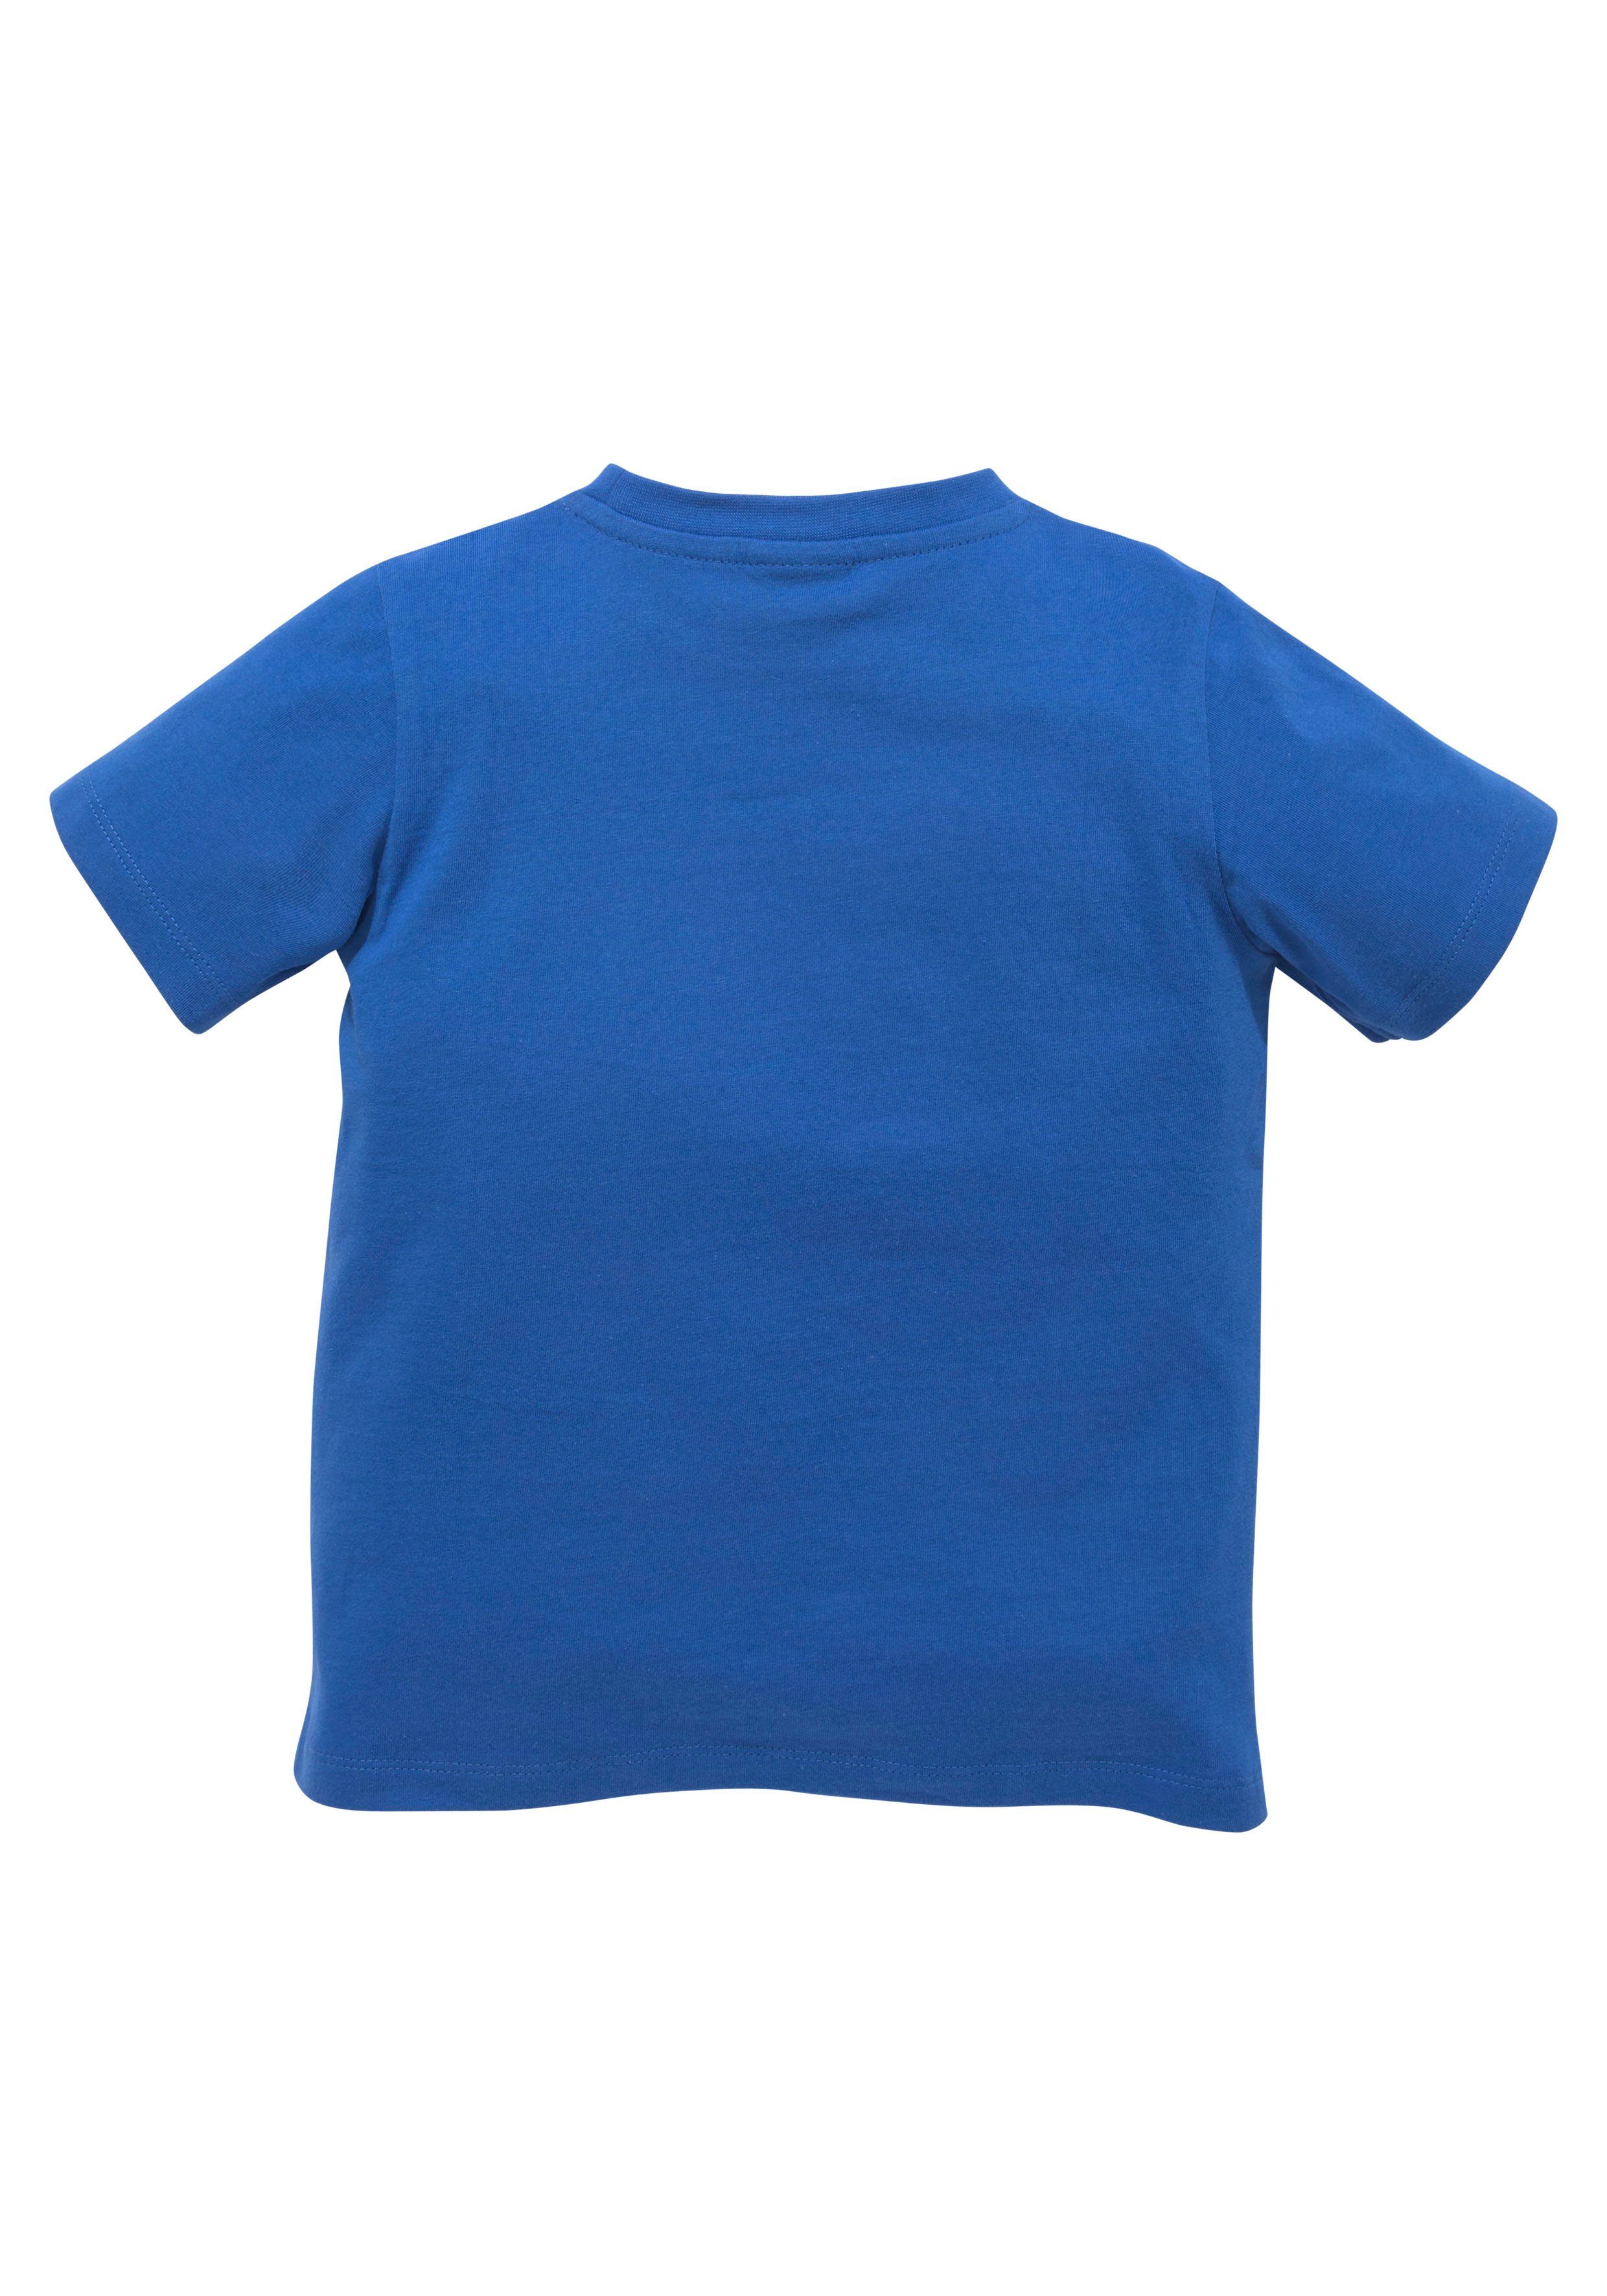 Spruch KIDSWORLD TOOOR, T-Shirt